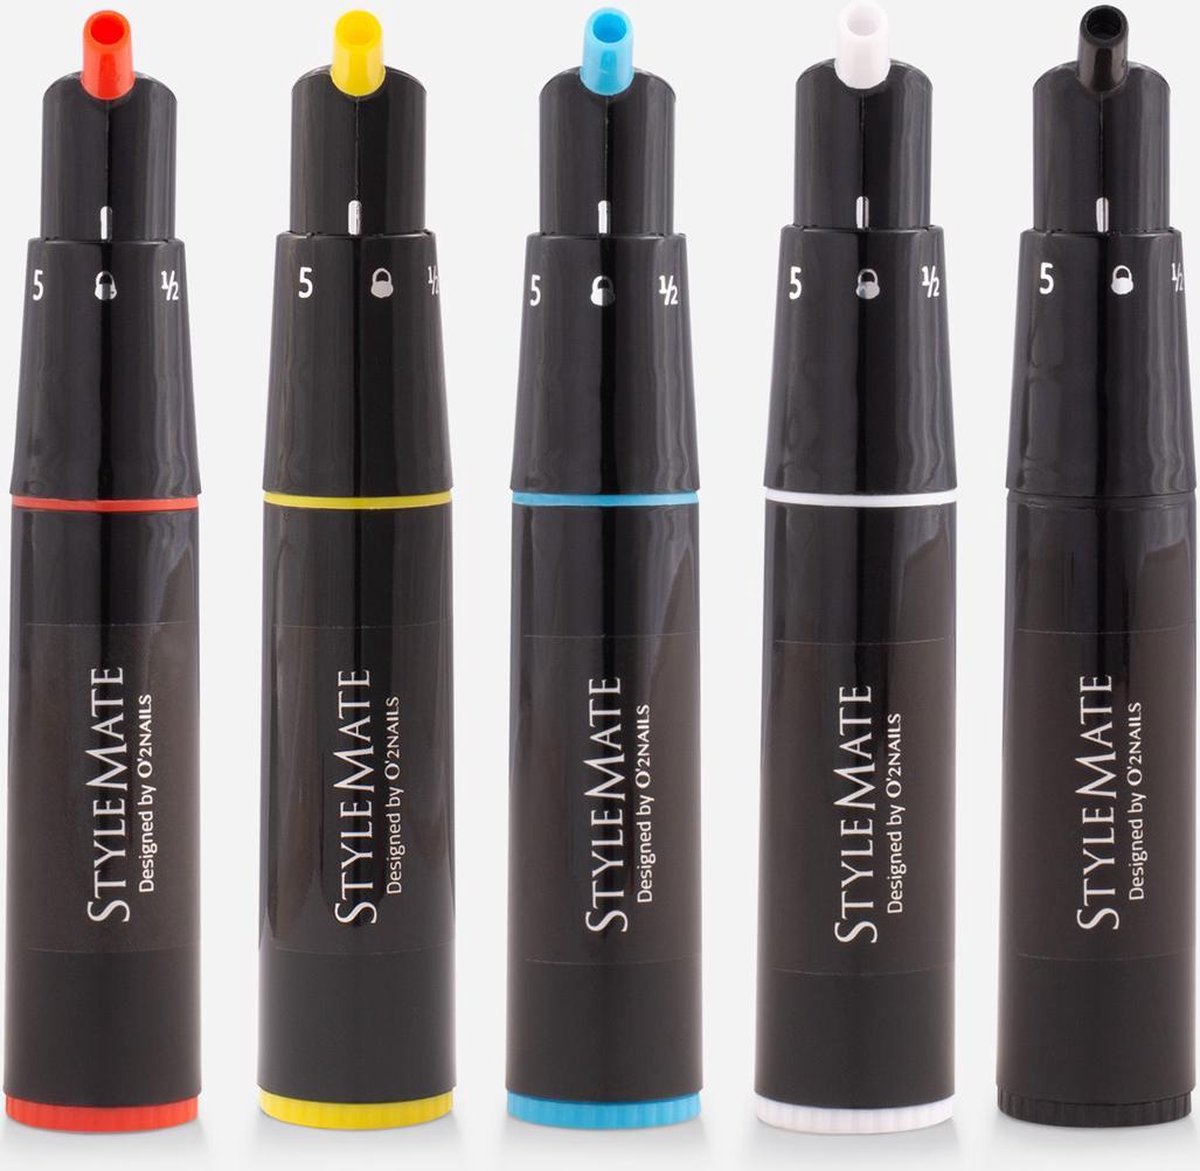 120 kleuren met de 5 Gellak Color Mixing Pens! - Gellak Starterspakket - PRINTER SET WITH NAIL ART